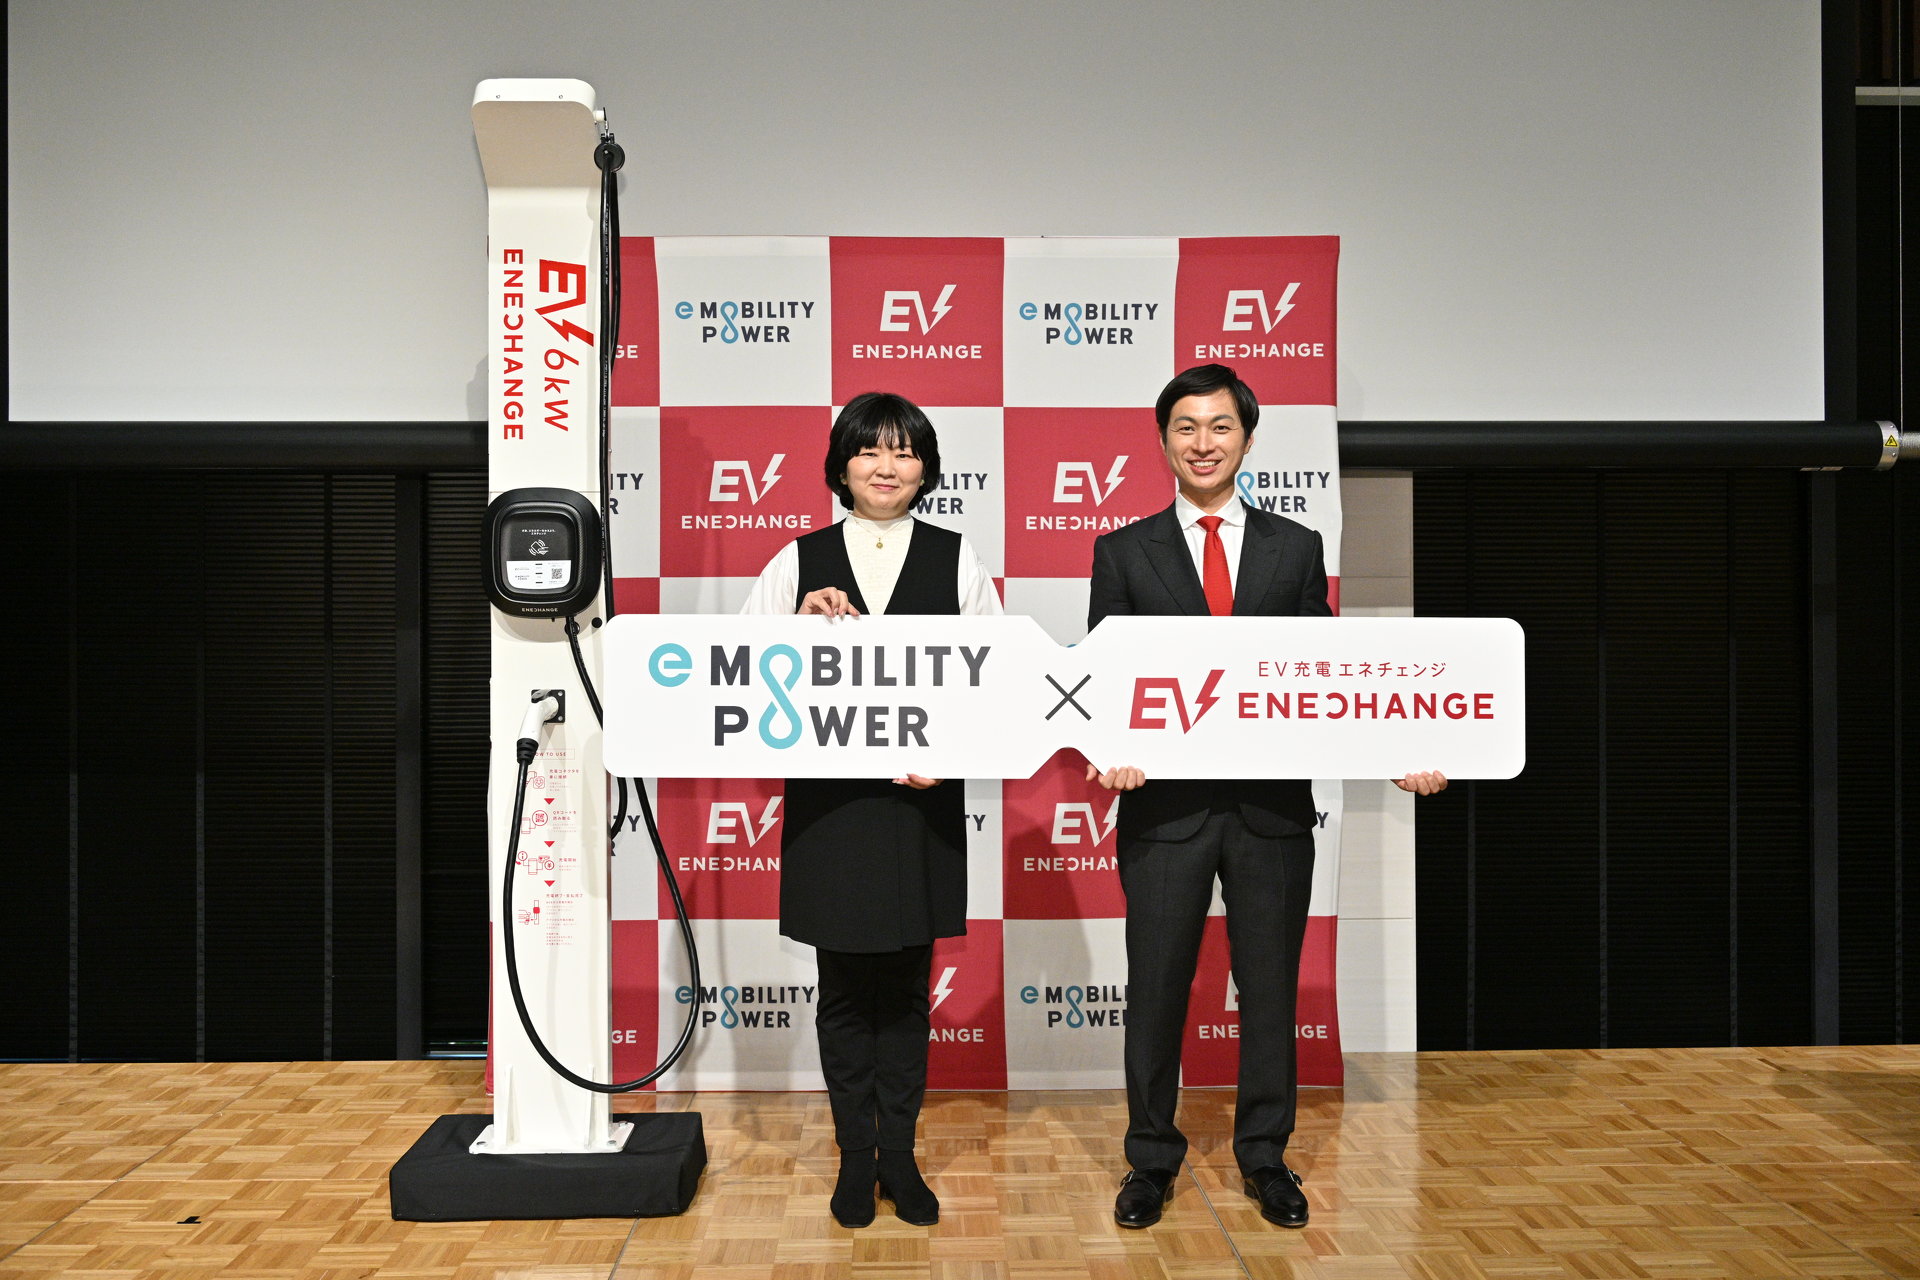 e-Mobility Powerの「1つのカードでどこでもEV充電」に、エネチェンジが参加